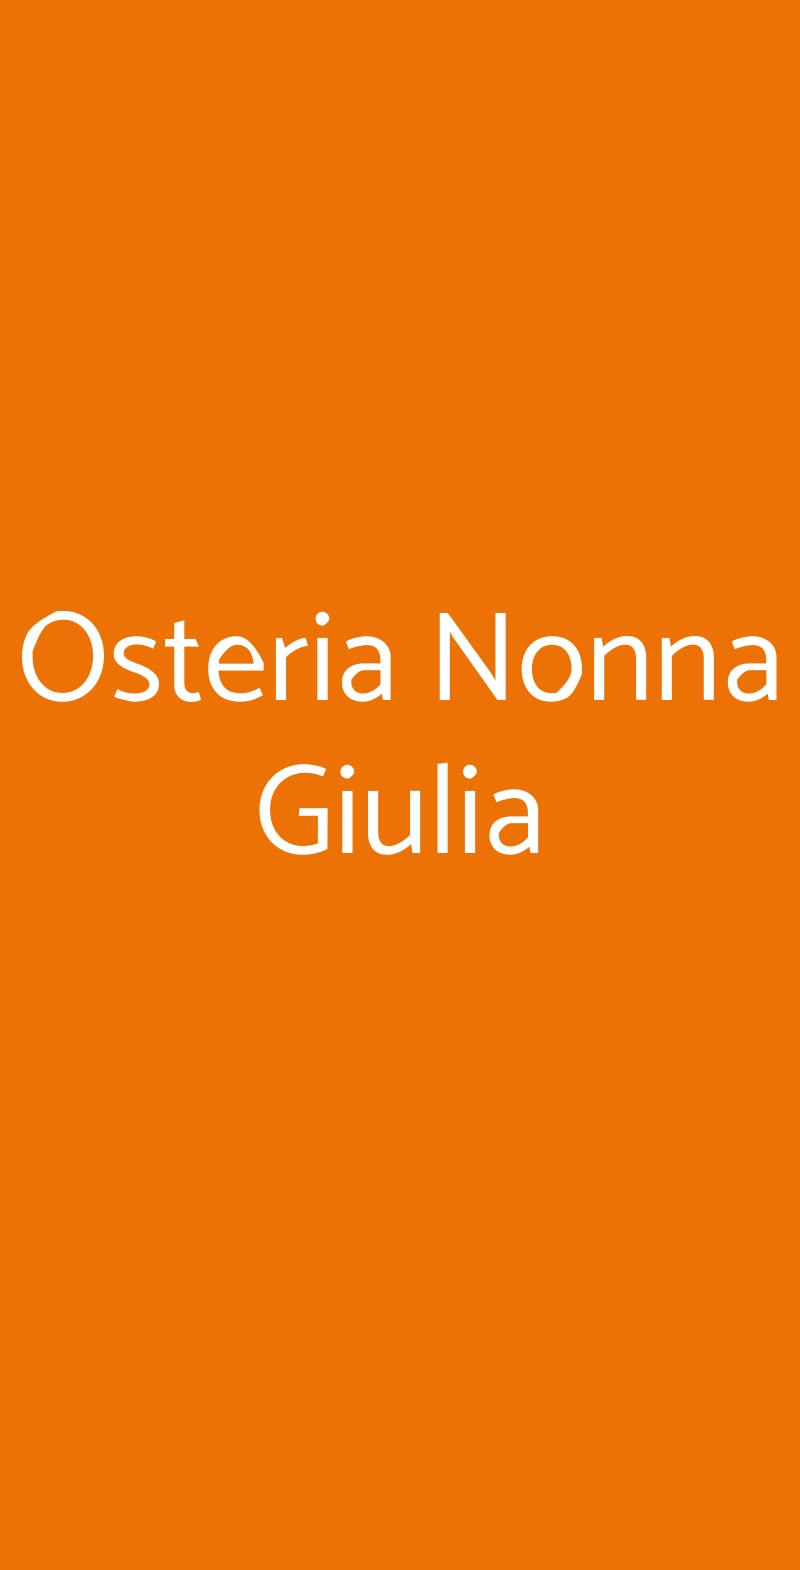 Osteria Nonna Giulia Melito Di Napoli menù 1 pagina